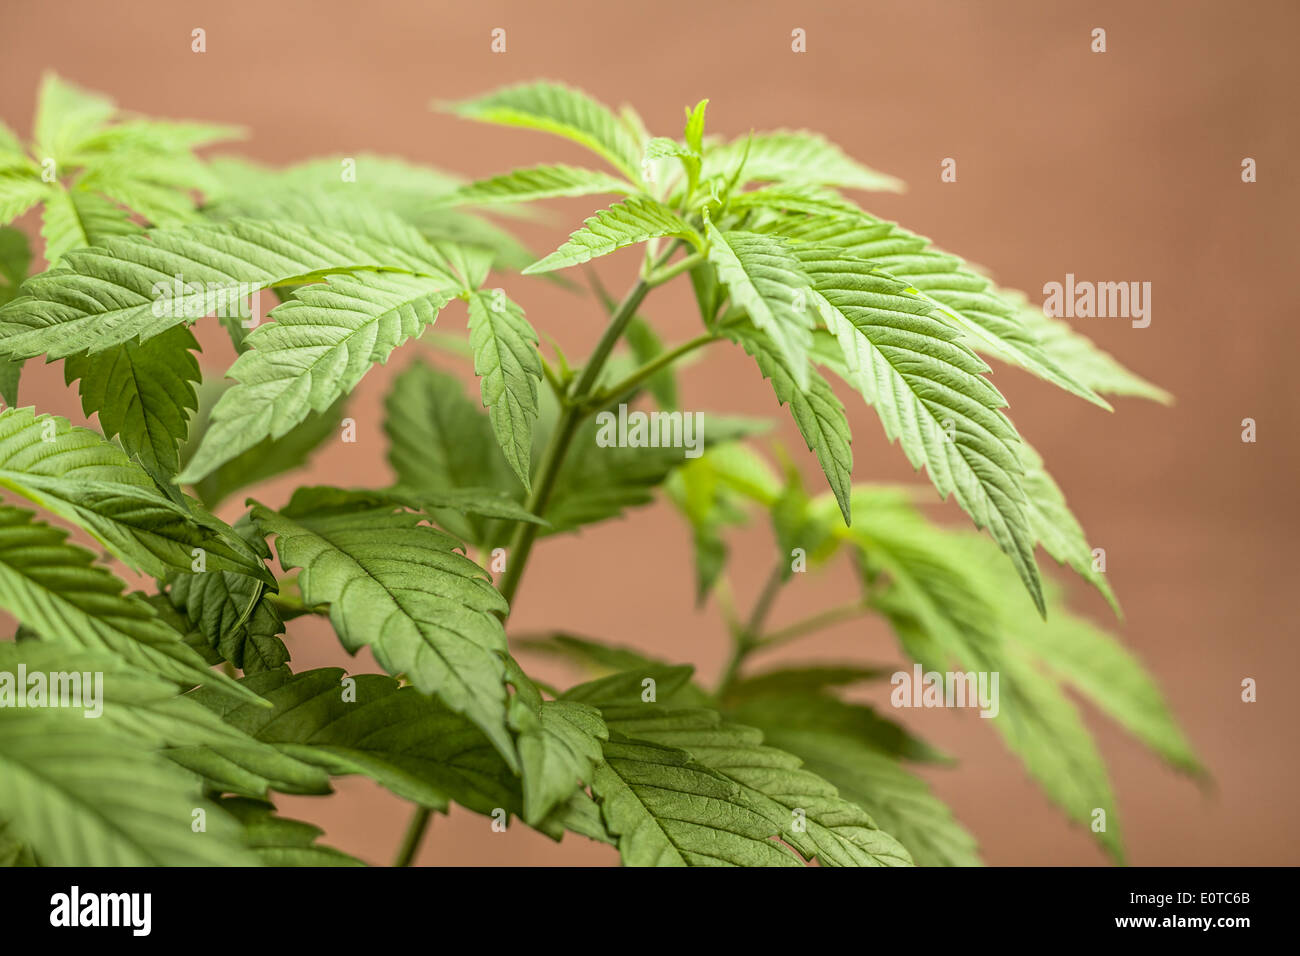 Dettaglio della cannabis pianta femmina, Indica ibrido dominante in fase vegetativa. Foto Stock